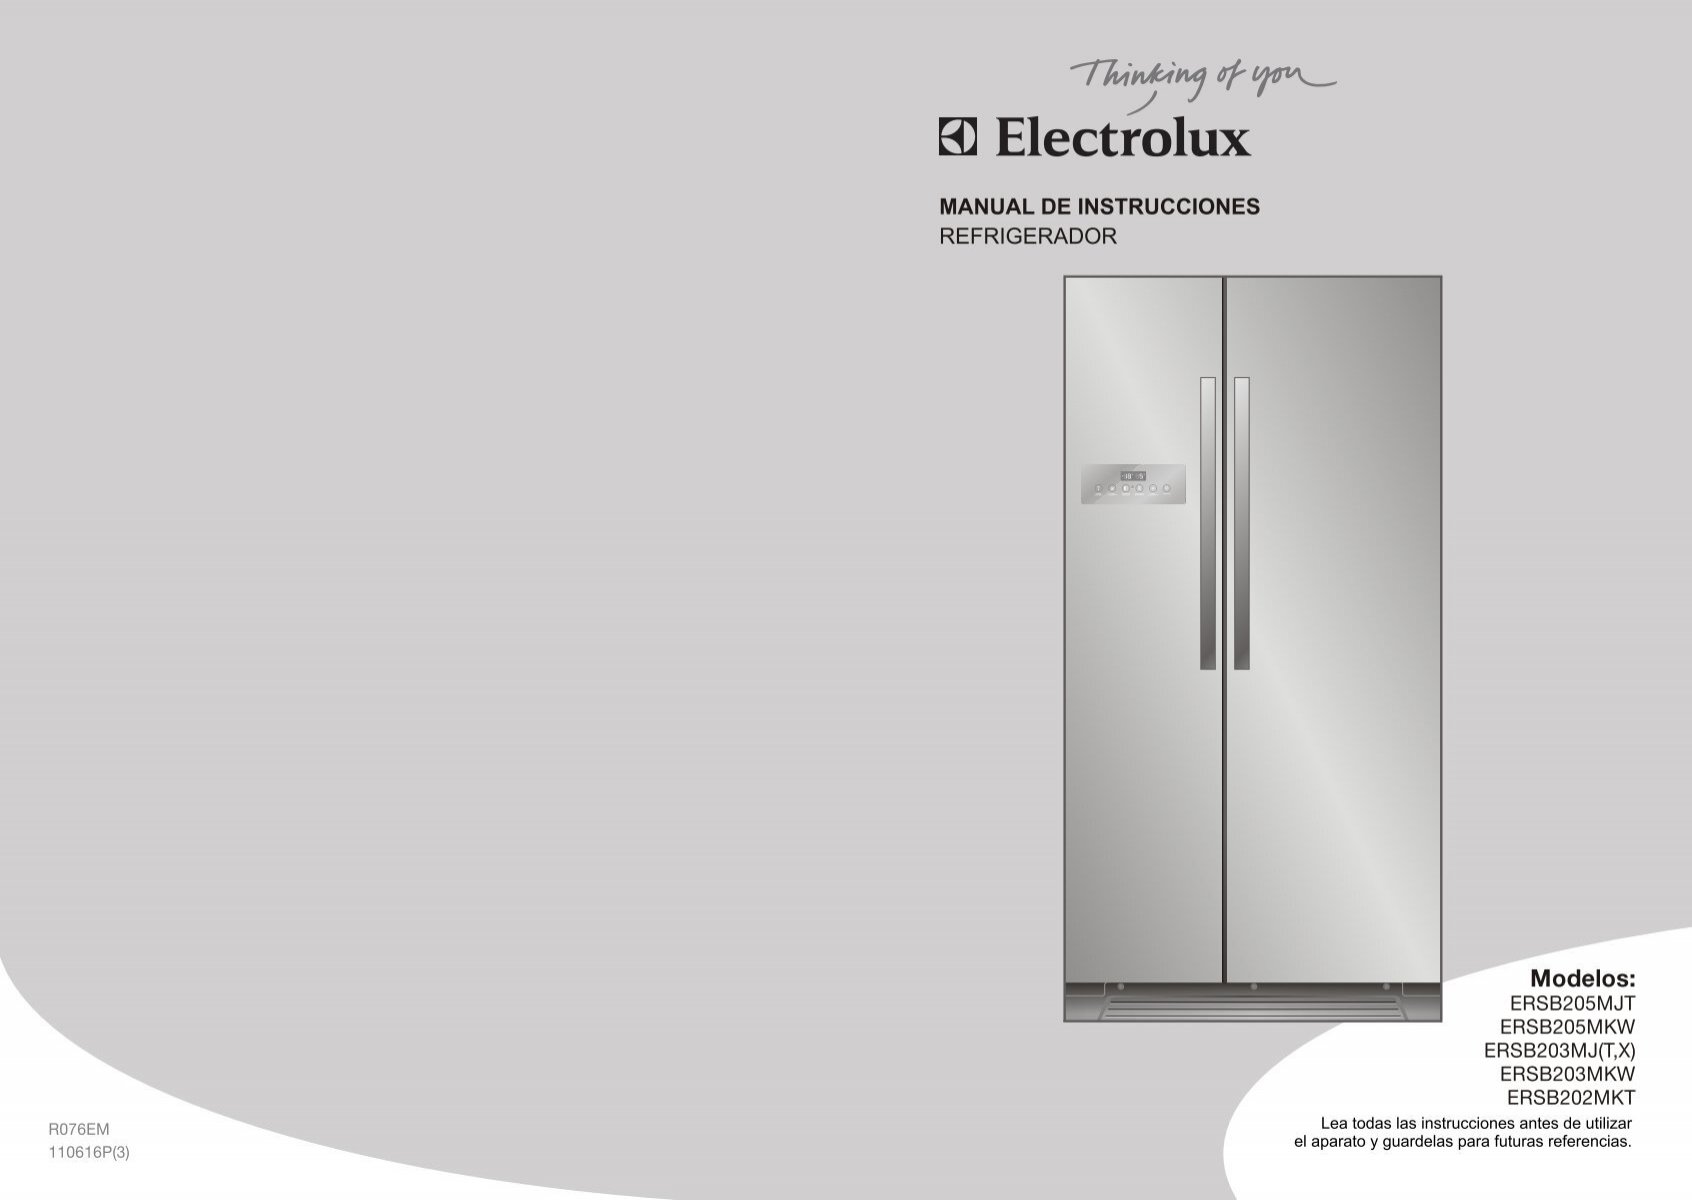 Refrigerador ERSB203MKW y ERSB203MJX - Electrolux